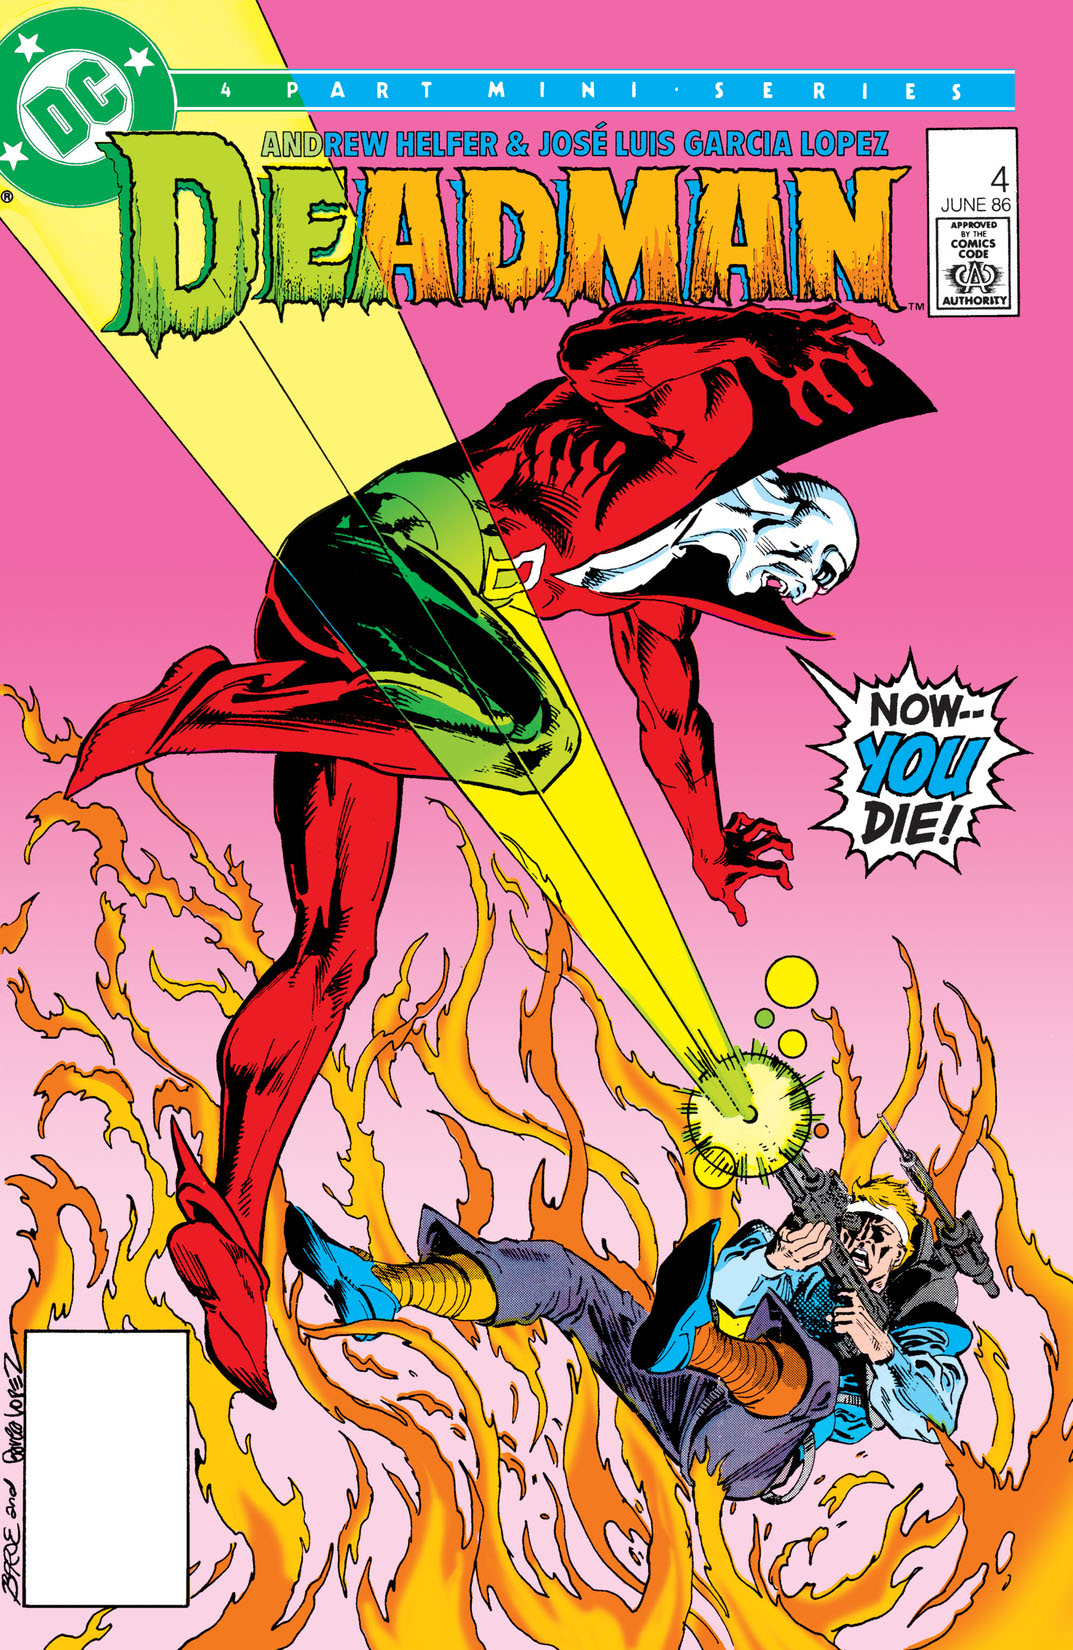 Deadman (1986-) #4 preview images